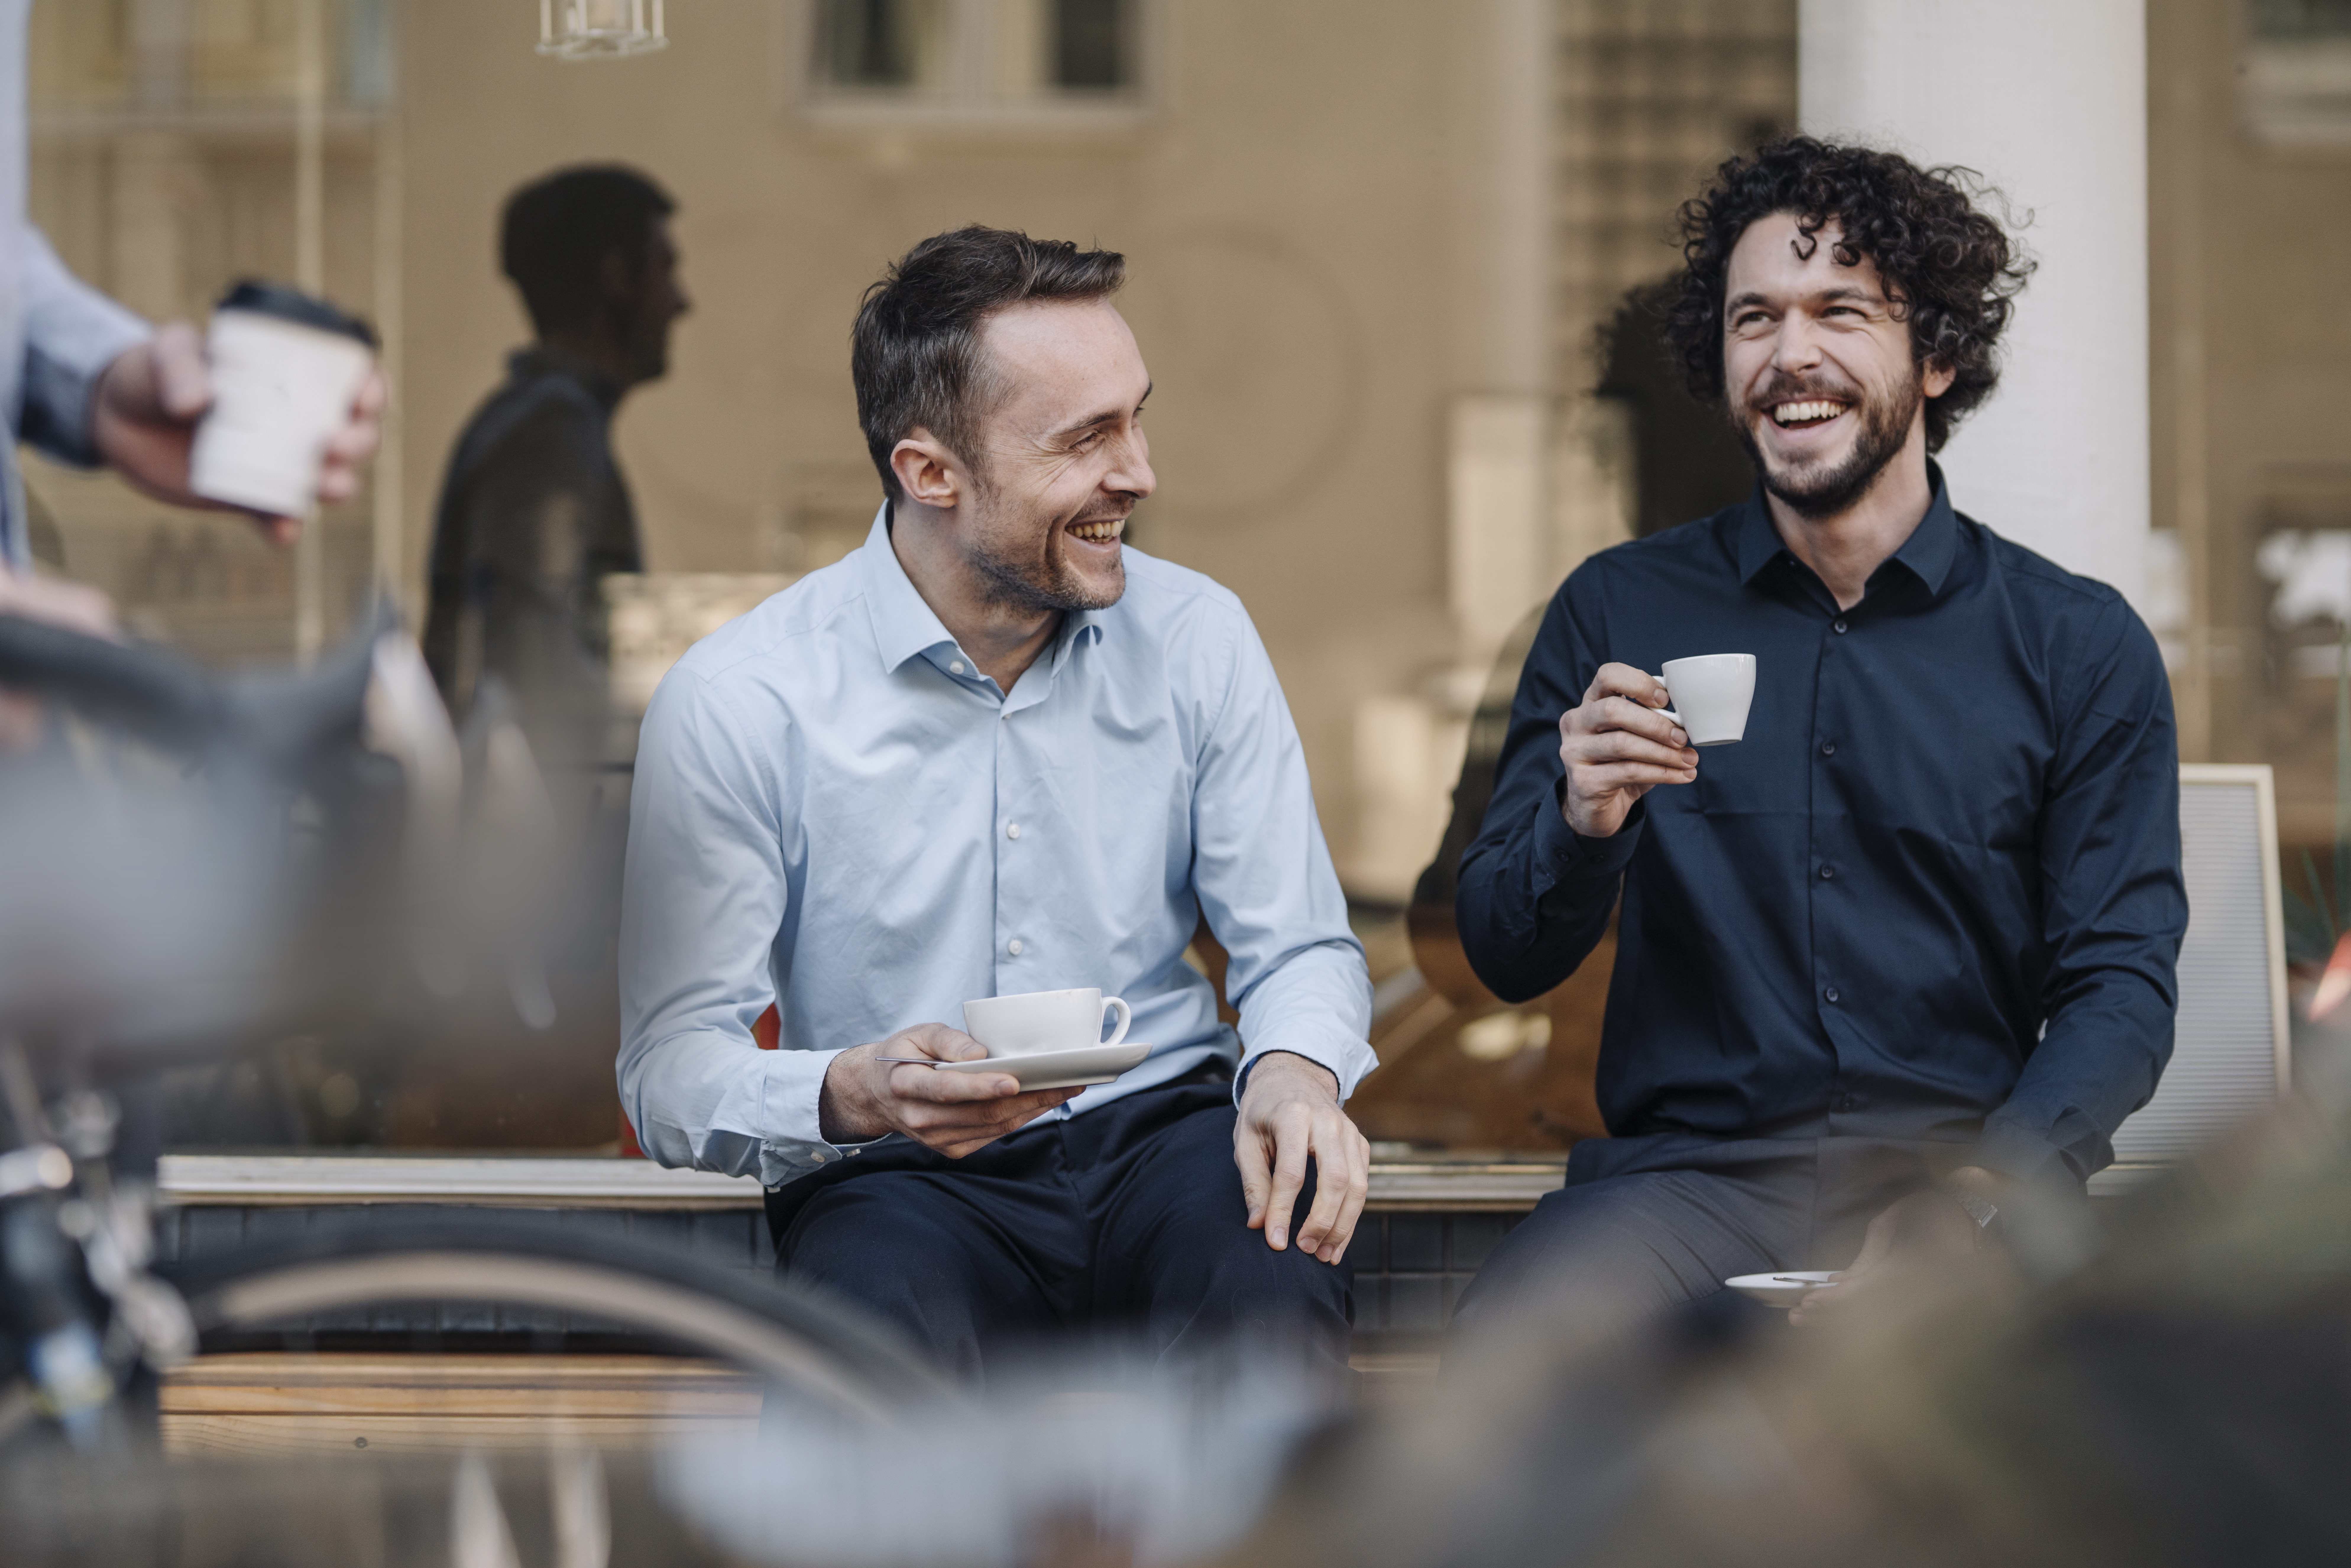 Deux hommes discutent en prenant un café | Source : Getty Images